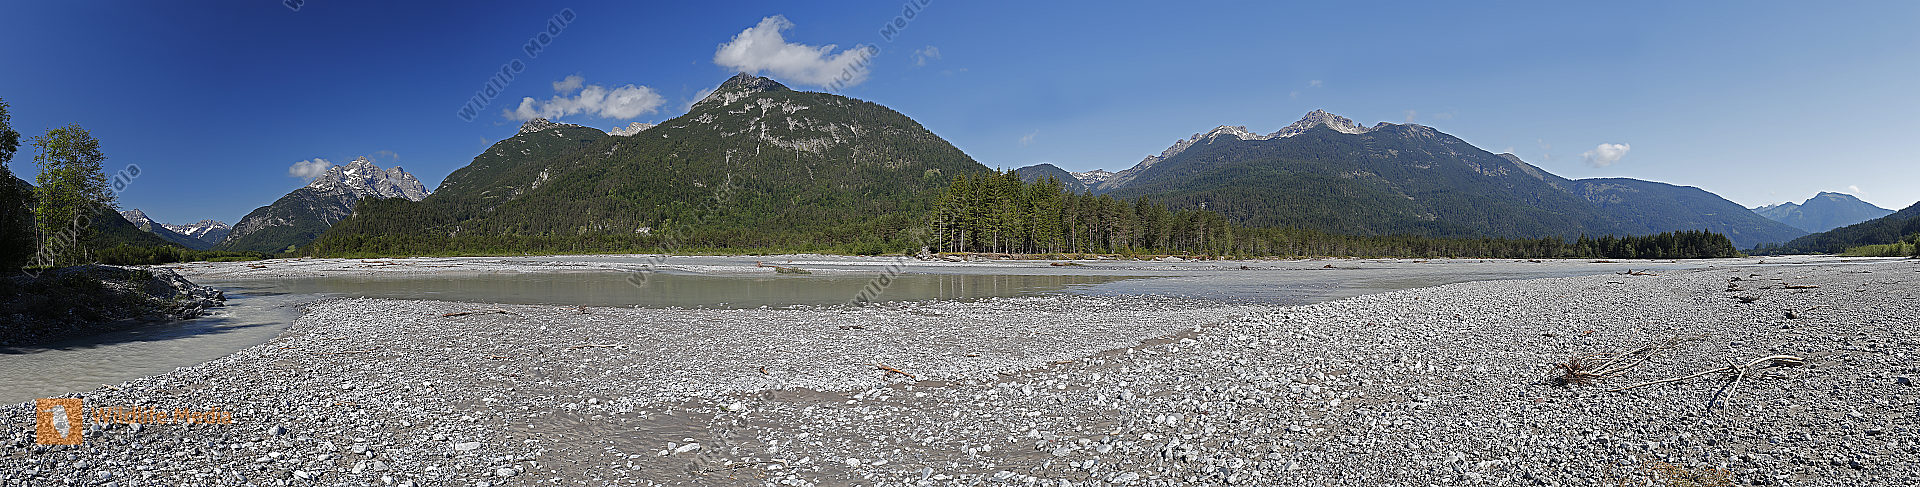 Tiroler Lechtal Panorama